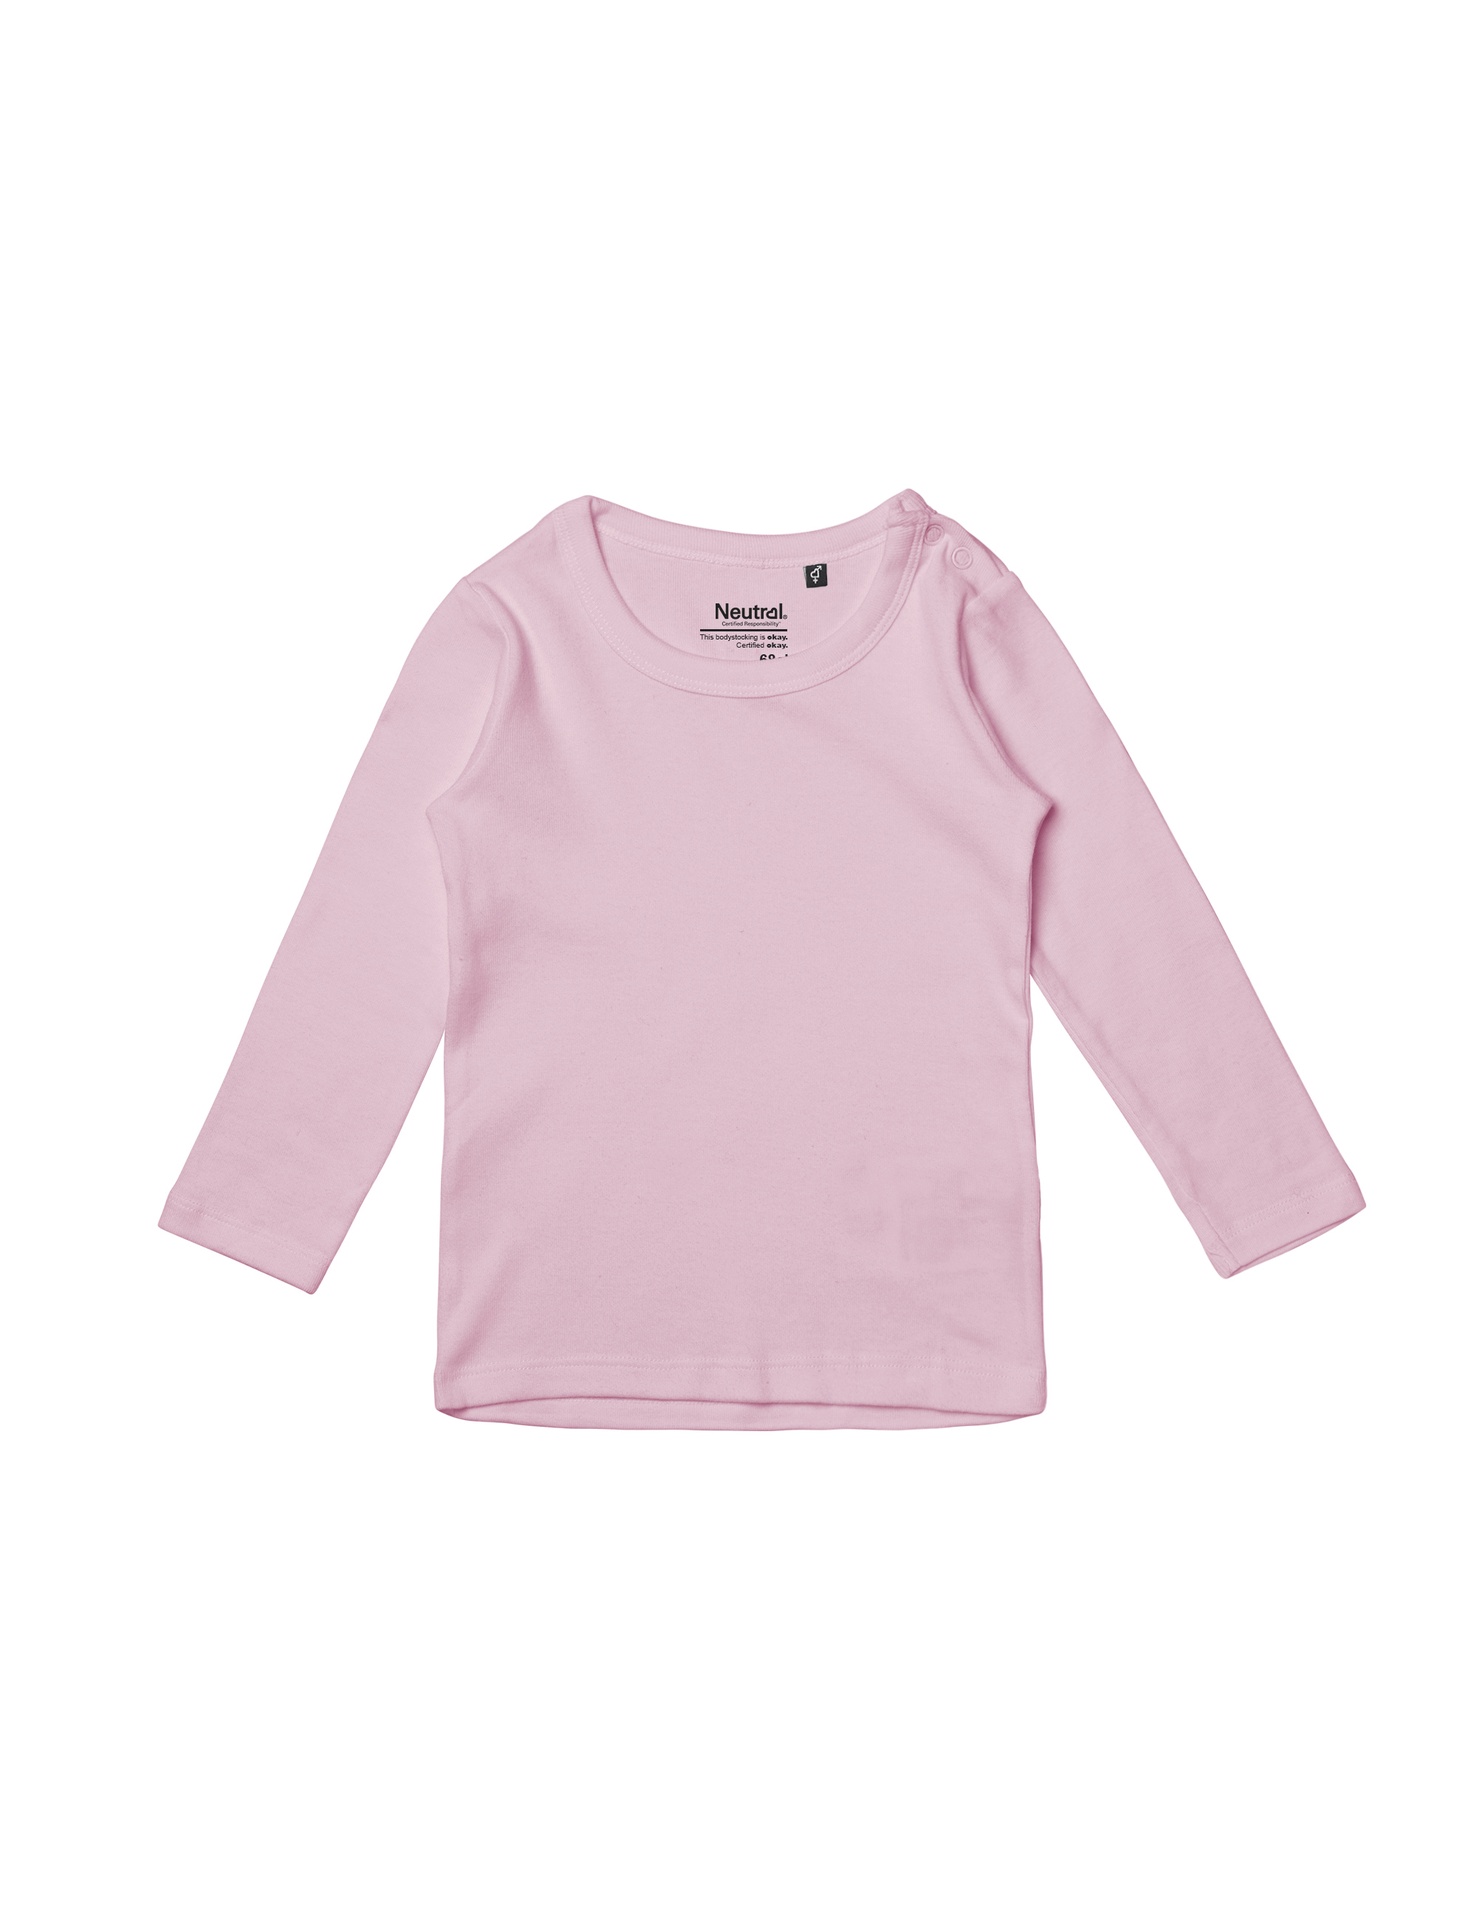 [PR/05624] Babies Long Sleeve T-Shirt (Light Pink 20, 74 cm)